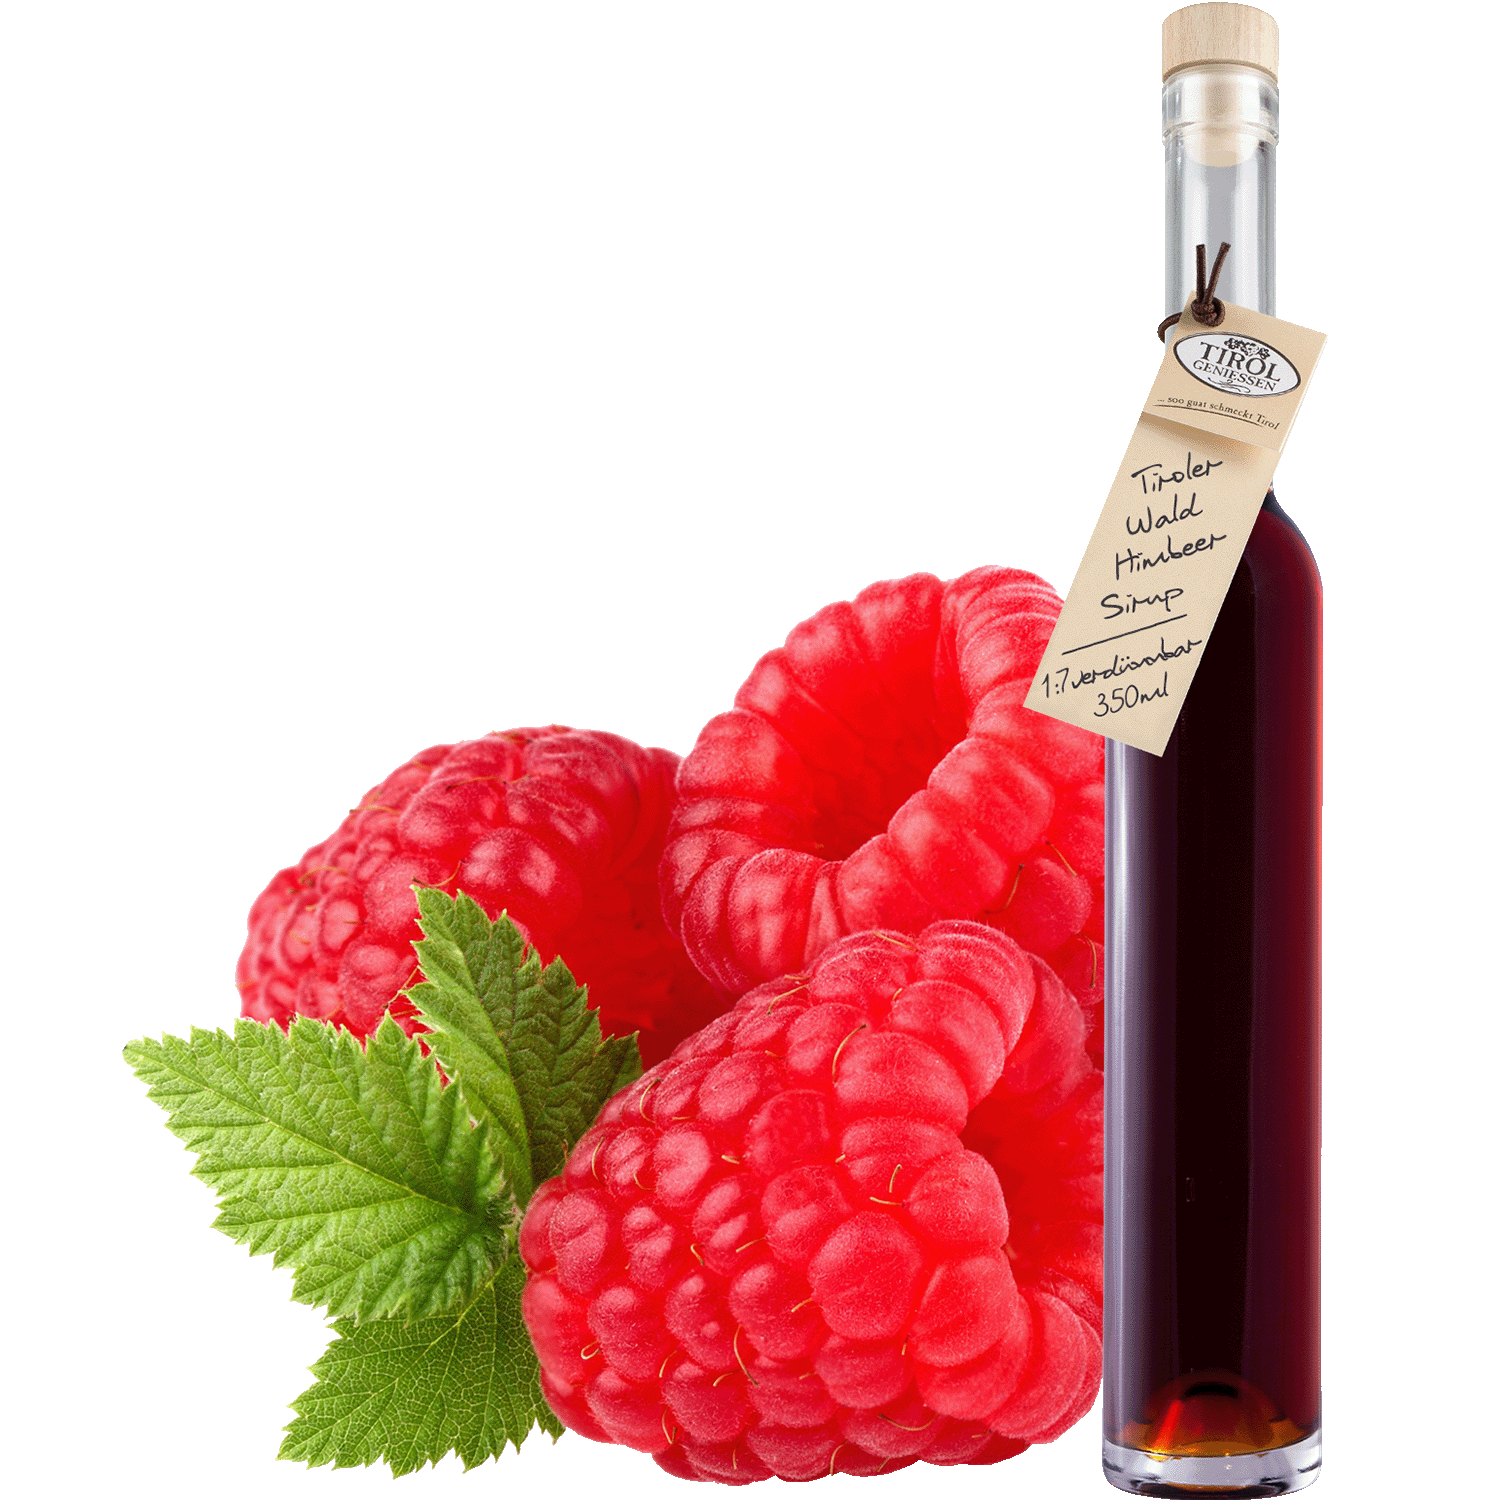 Wild Raspberry Syrup in gift bottle from Austria from Tirol Geniessen